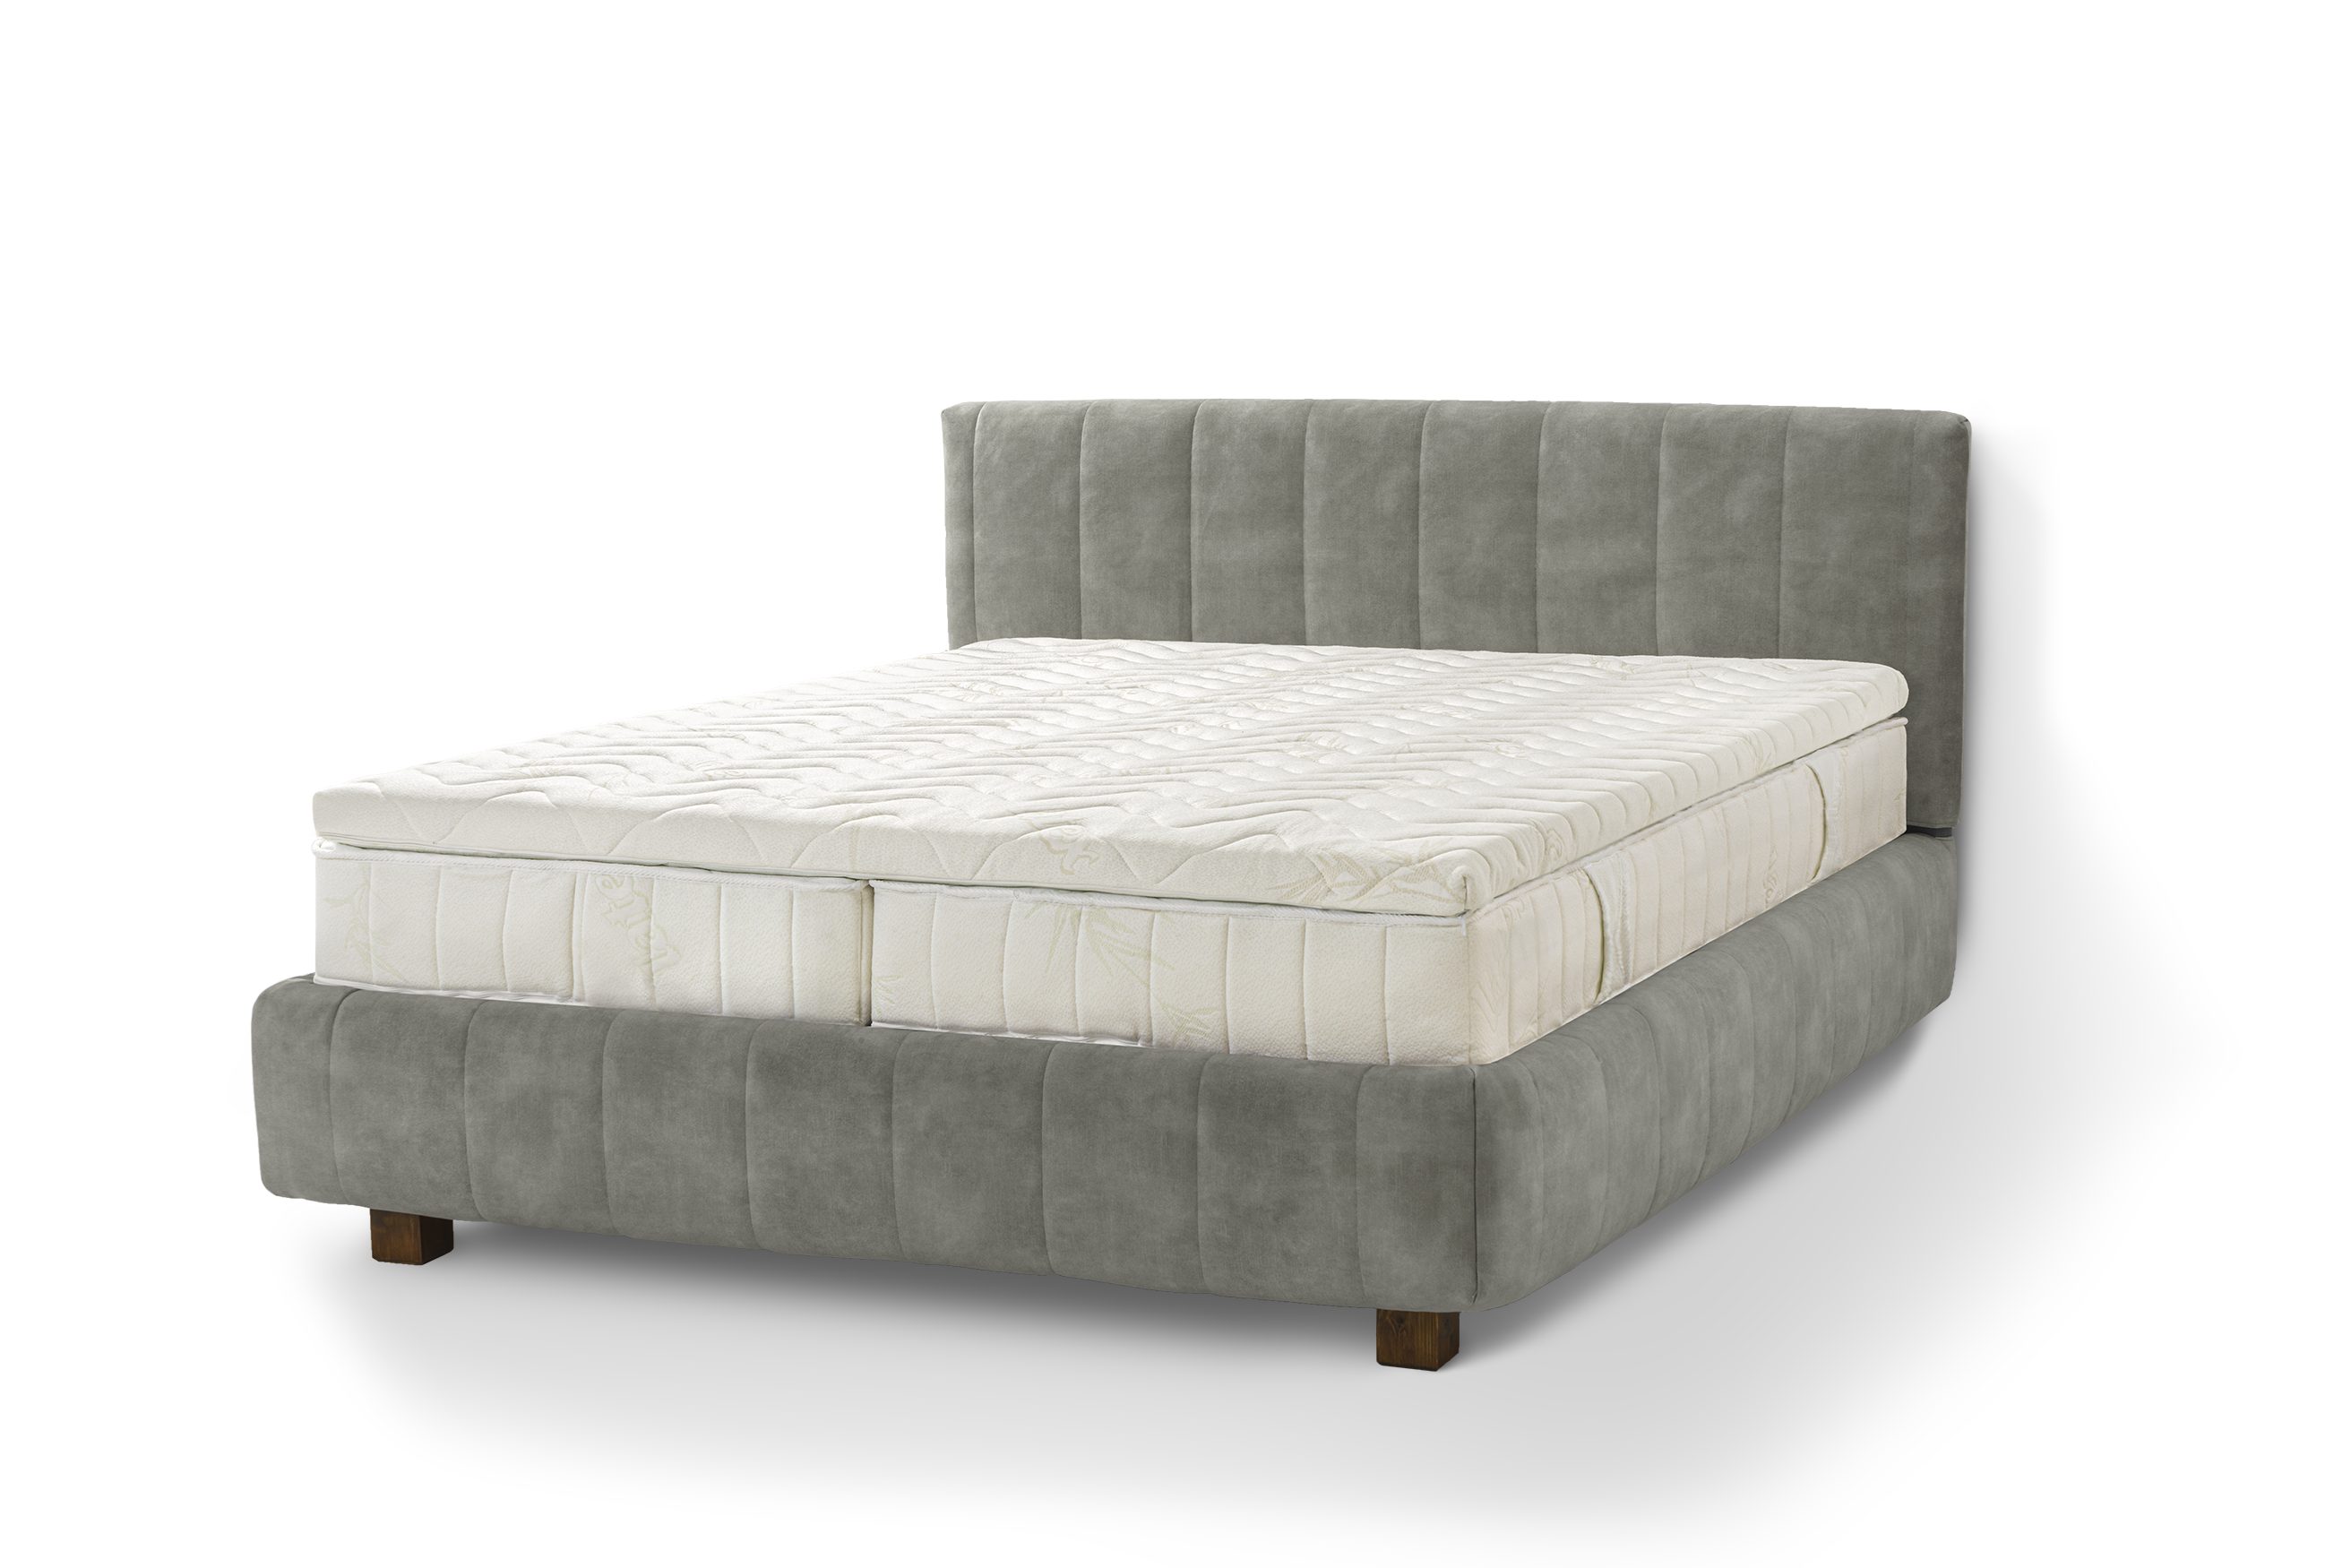 Letti Moderni Holzbett Bett Calma, hergestellt aus hochwertigem Massivholz Plüsch Cement Green Gray